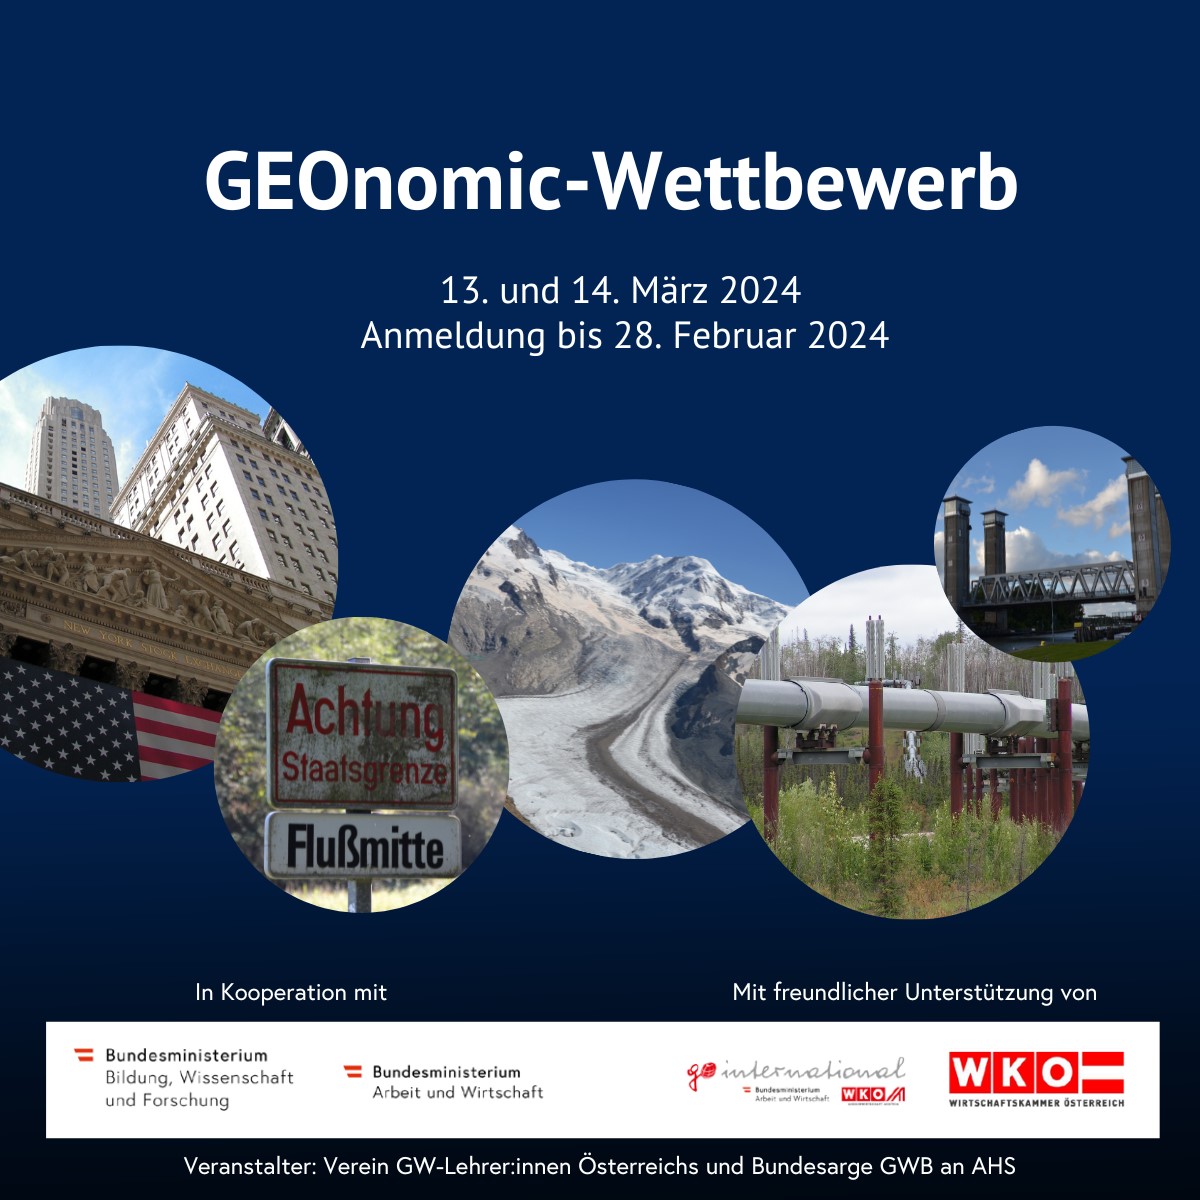 Geonomic-Wettbewerb 2023/24 - Logos von Wirtschaftskammer Österreich, Bundesministerium für Arbeit und Wirtschaft, Bundesministerium für Bildung, Wissenschaft und Forschung